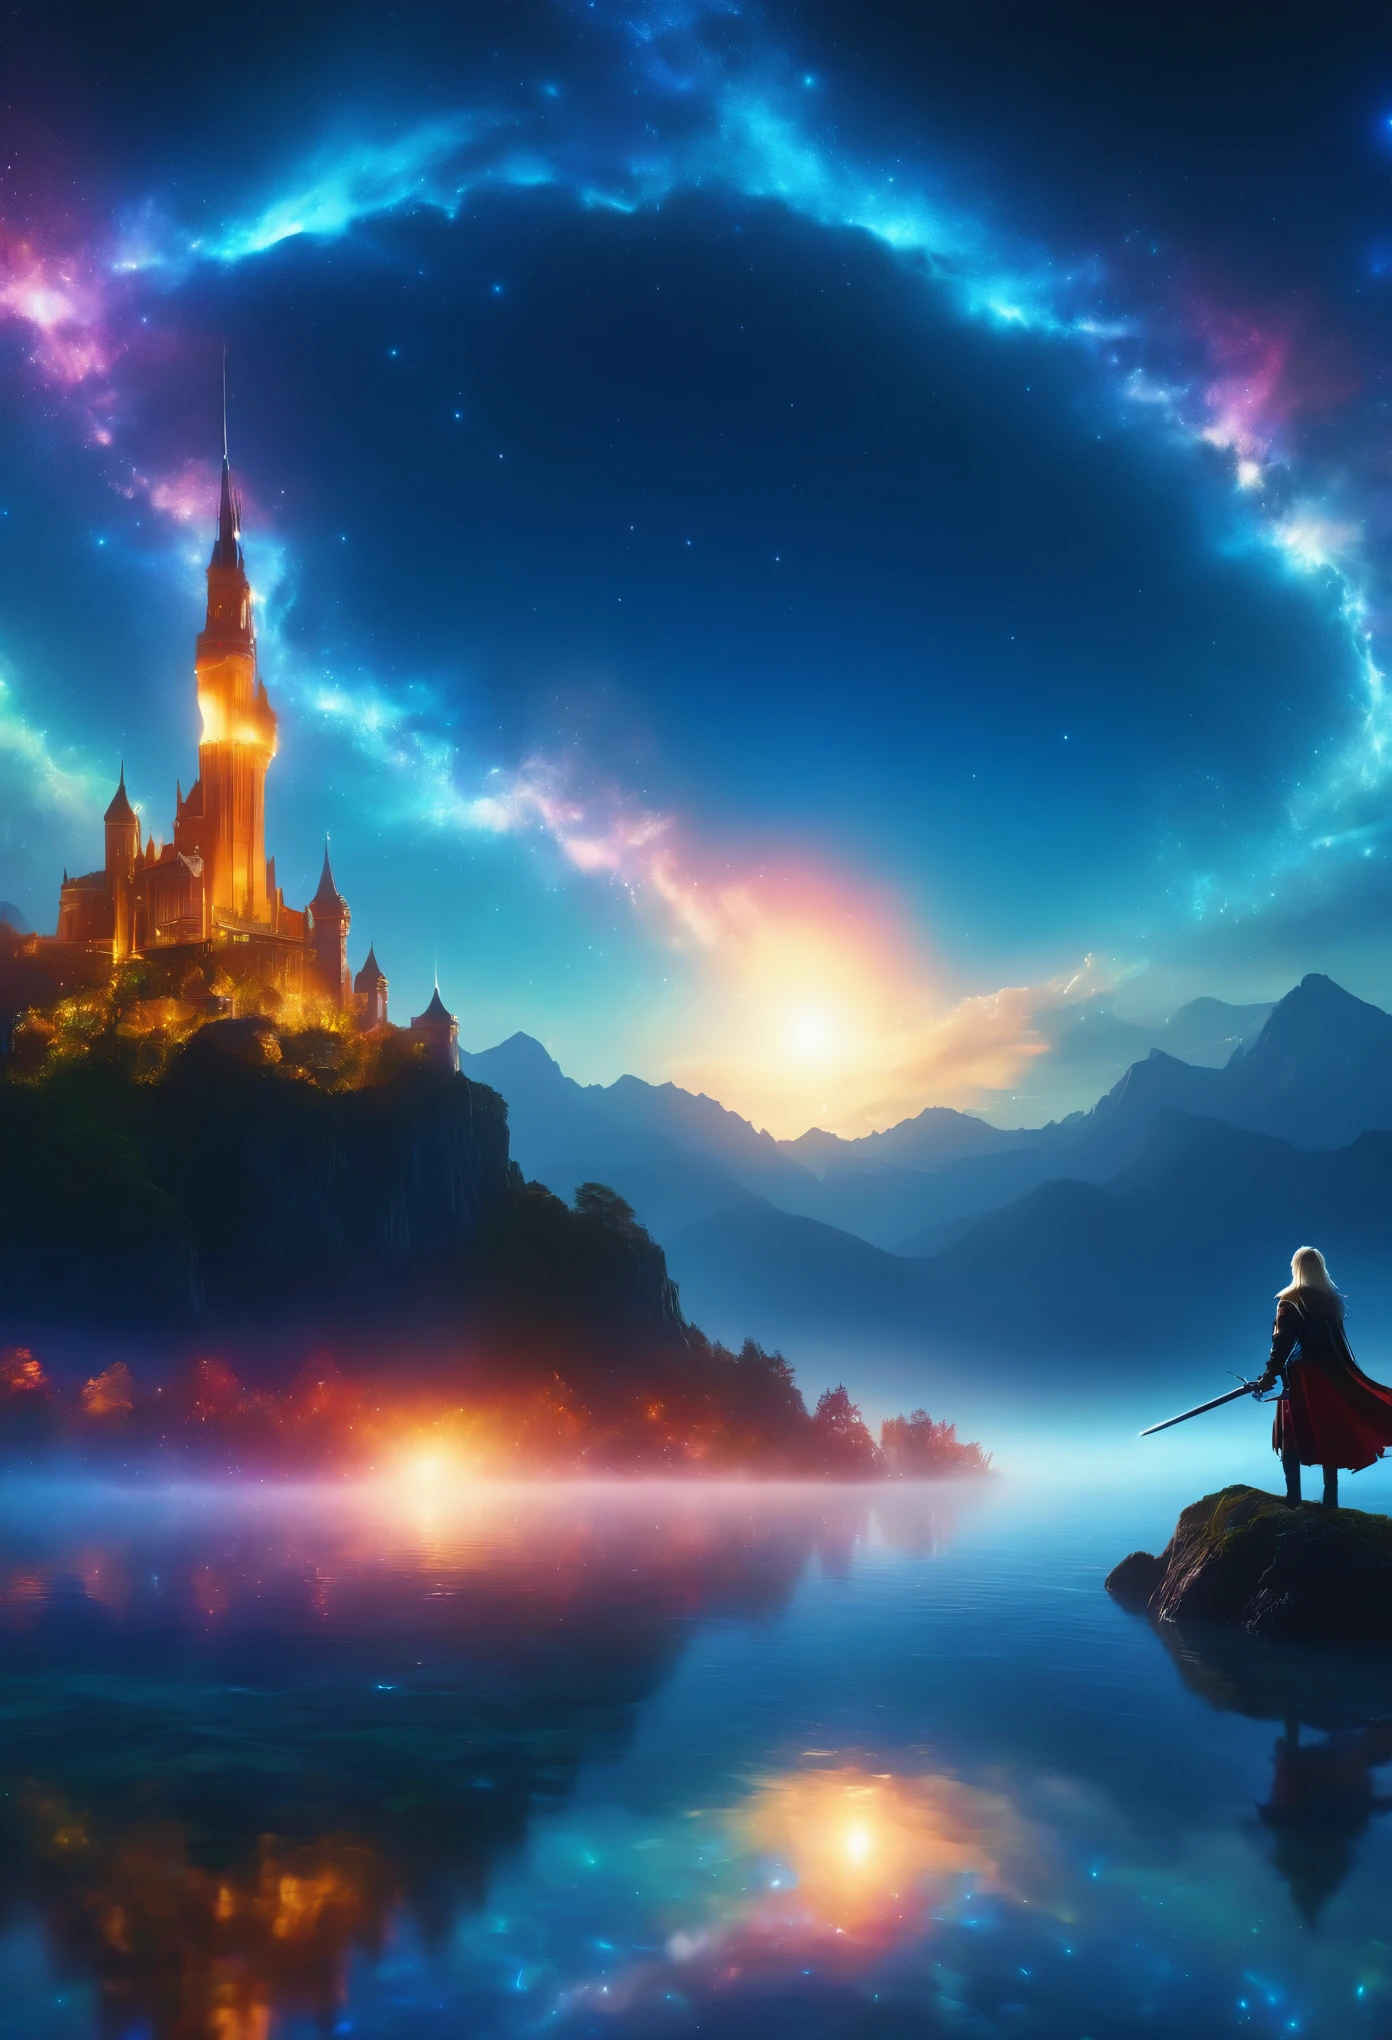 (8k, la plus haute qualité, chef-d&#39;œuvre, Style Final Fantasy: 1.2), (Irréaliste, photoréaliste: 1.37), (une dame mage debout au bord du lac, énorme buste rebondissant, Couvrez tout votre corps de lumière, épéiste magique, avec l&#39;épée avec le feu, Son épée brille dans les cieux:1.1), paysage de rêve, fantaisie, Des paysages irréels, Super détaillé, Château médiéval volant, Île flottante dans le ciel, Tourbillon de lumière à sept couleurs, (流星のM.Un oiseau brillant à longue queue vole dans le ciel:1.3), Aurore, Des éclairs intenses, voie Lactée, lumière complexe, M.々Lumière colorée, grand lac, Ciel étoilé reflété à la surface du lac, D&#39;innombrables étoiles brillantes, météores, De nombreux météores, Aura de, (Un pilier de lumière émanait du sol:1,2), 複雑な文M.cercle magique,